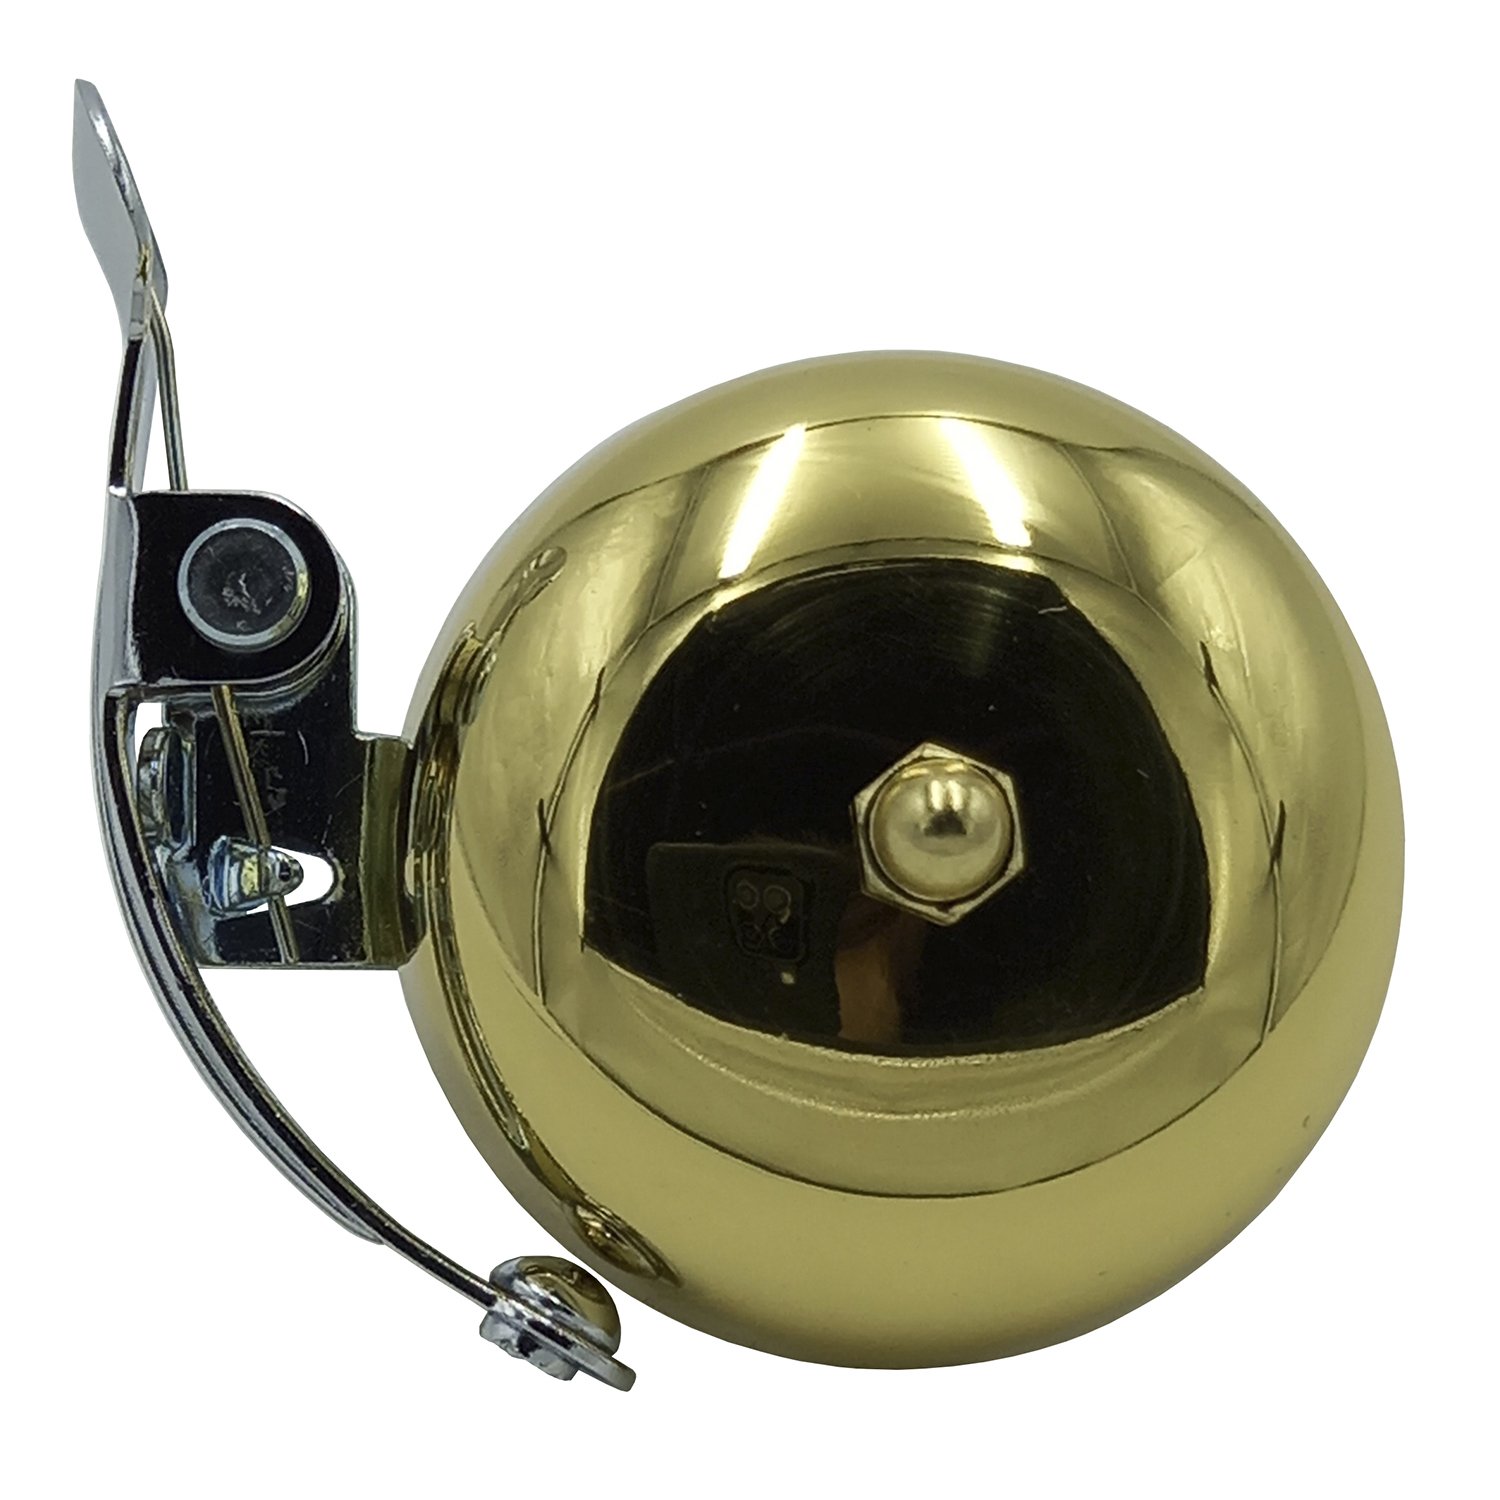 Звонок 6-650 сталь JH-650SS сильный звук защита от дождя ретро-дизайн золотист.